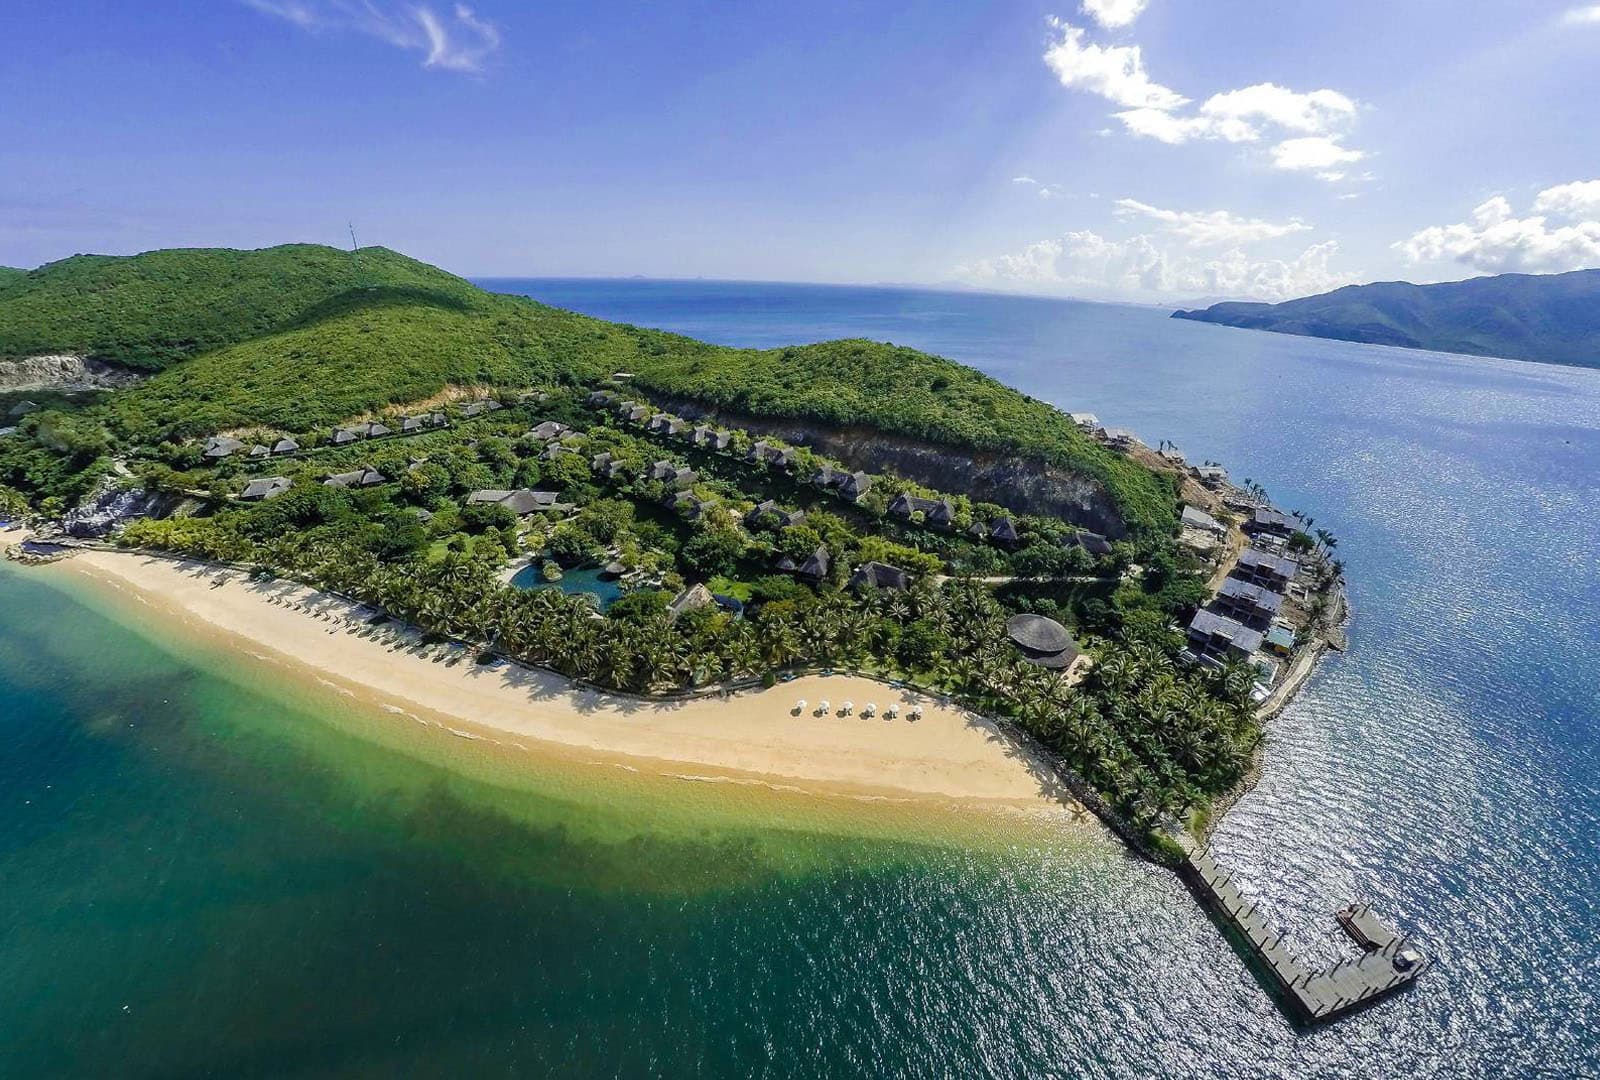 Đảo Hòn Tằm là địa chỉ nghỉ dưỡng lý tưởng khi có khu phức hợp tắm bùn khoáng trên đảo lớn nhất Việt Nam